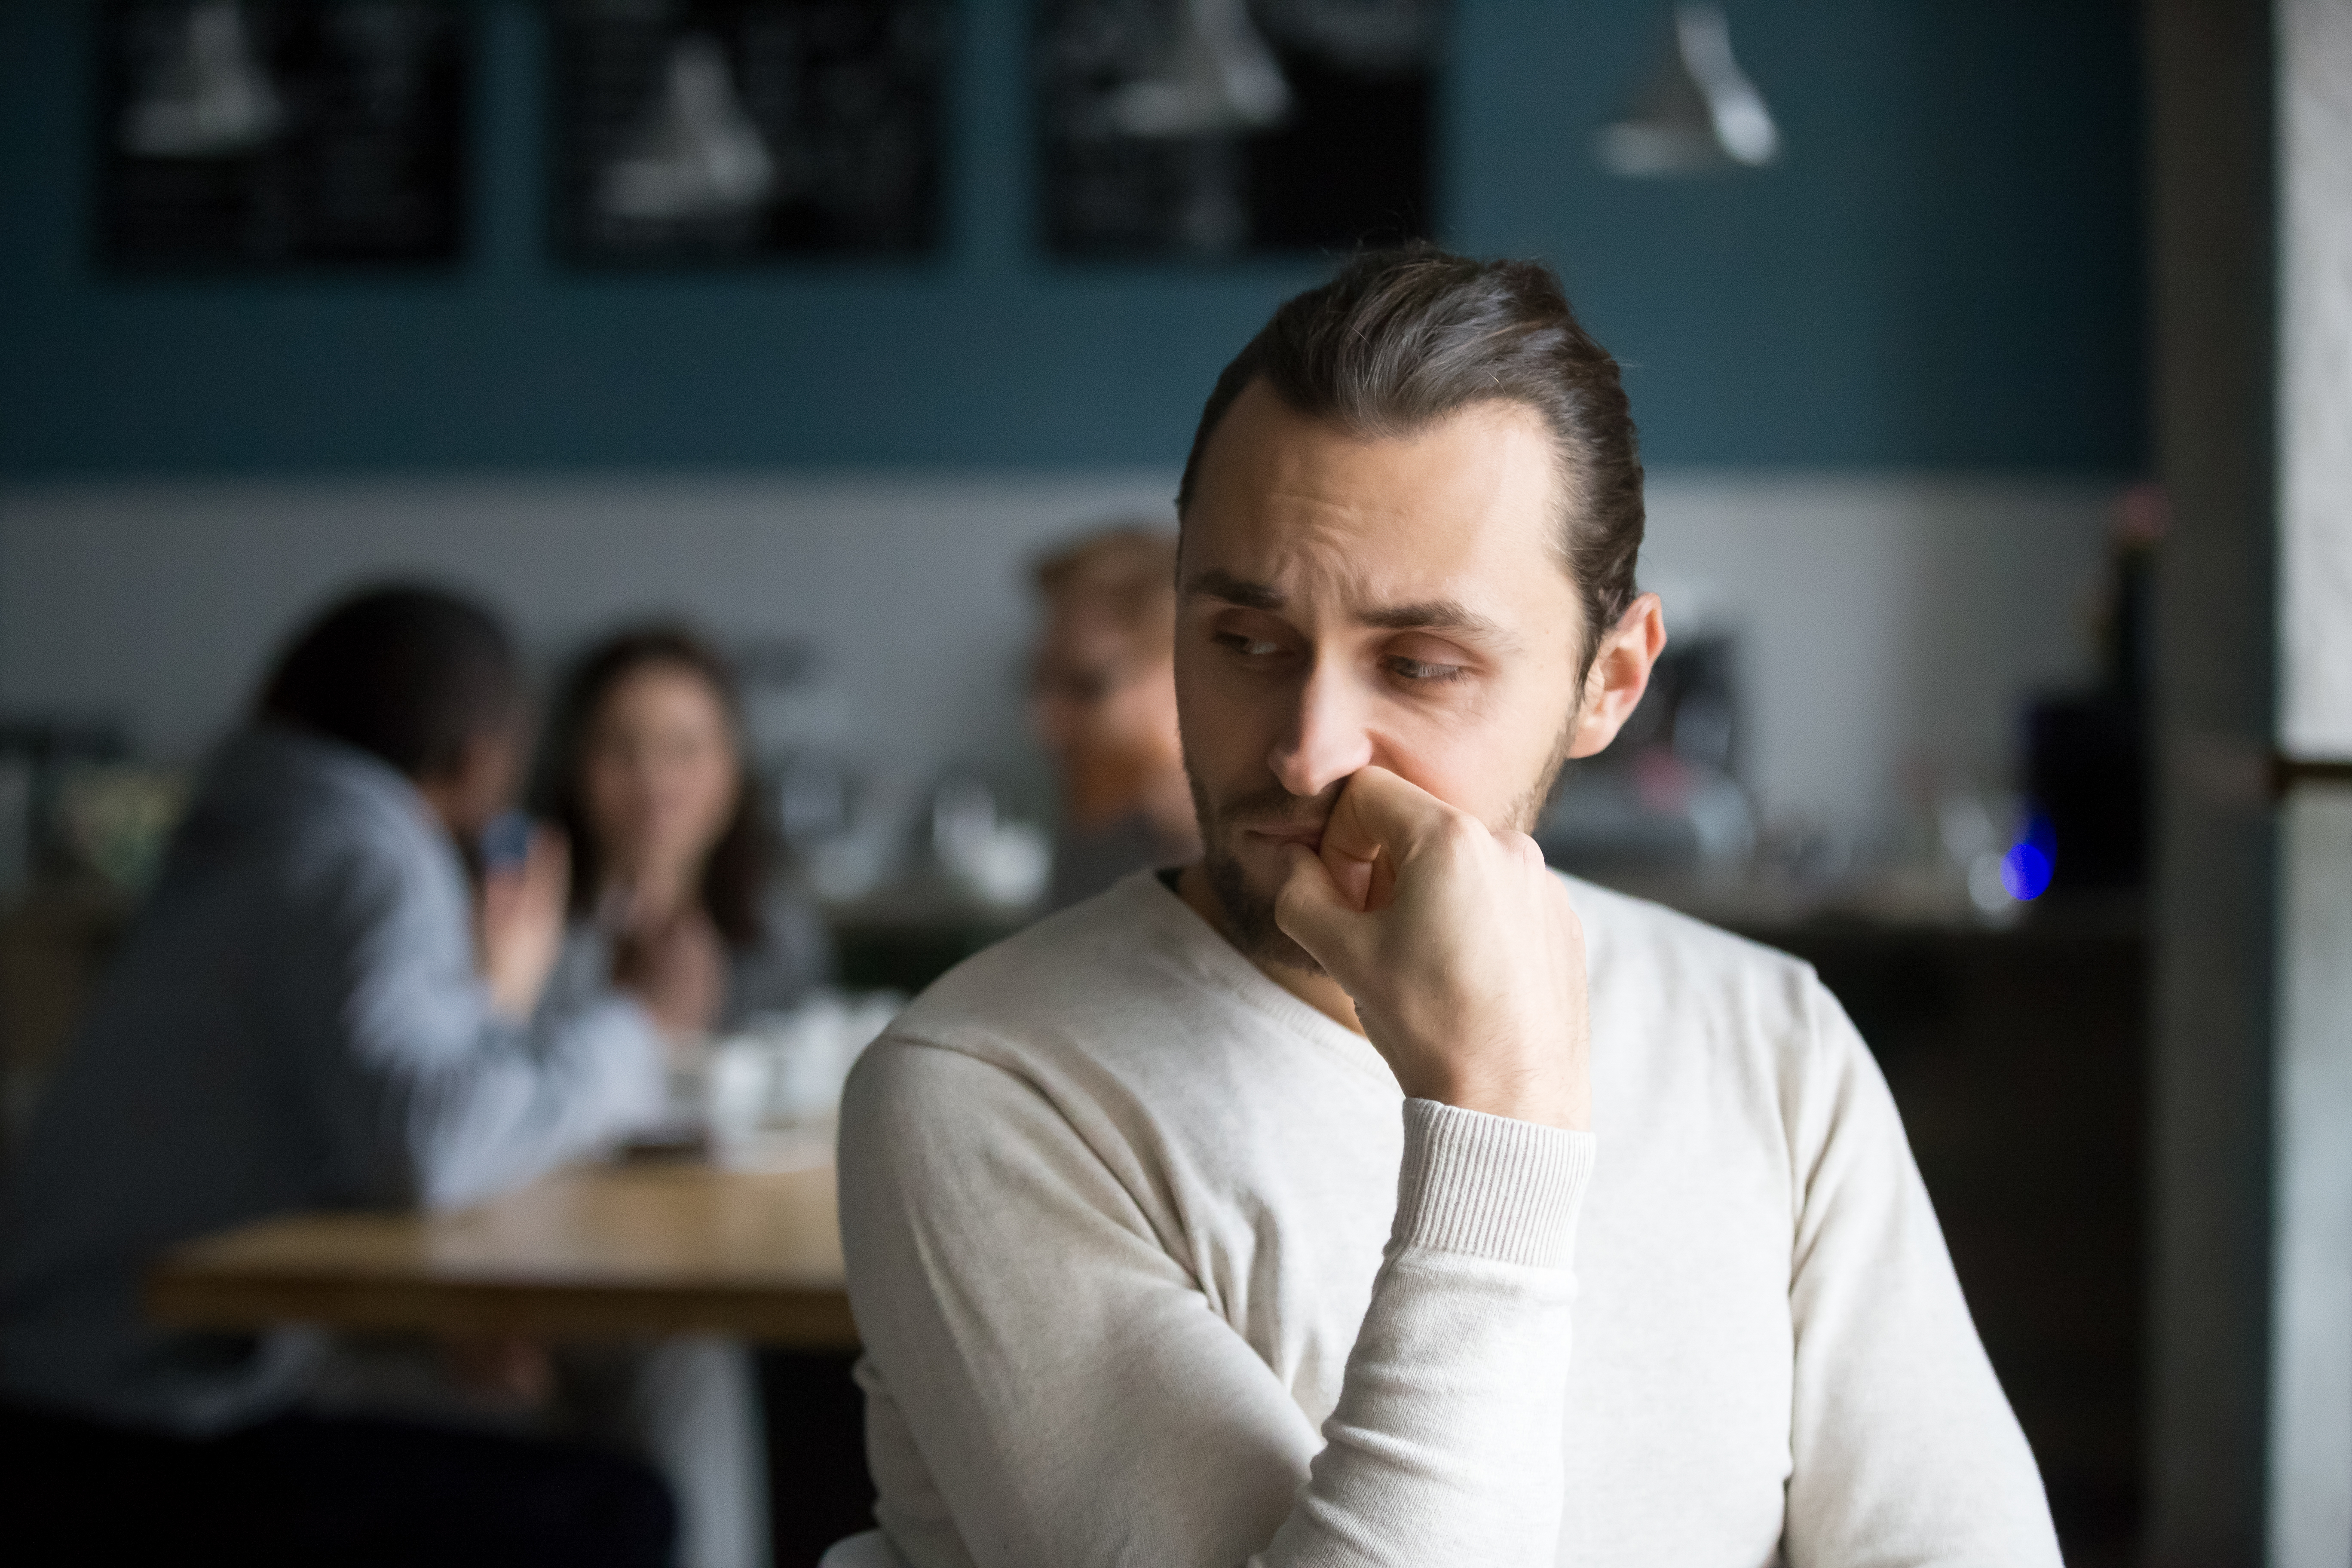 Ein junger Mann sitzt allein in einem Restaurant | Quelle: Shutterstock